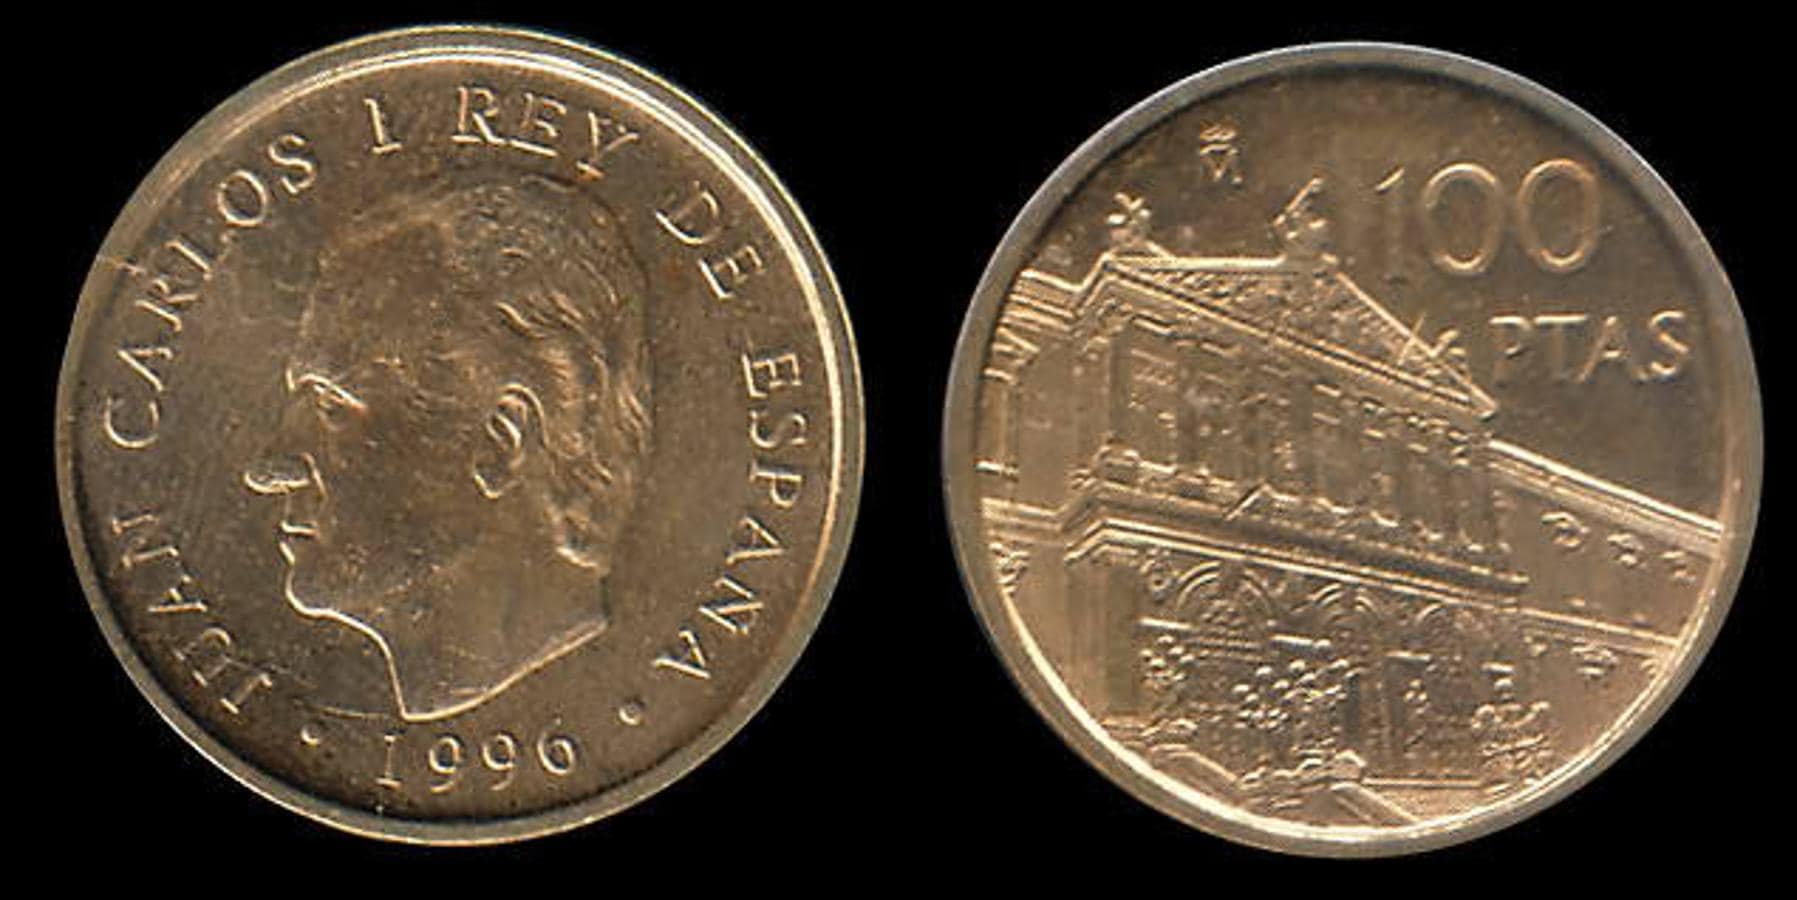 100 Pesetas 1966. Estas grandes monedas de plata se fabricaron en 1966, aunque las del 69 son las más caras, llegando a costar 145 euros. Existe una variante que tiene el palo del 9 recto y que ya alcanza los 400 euros.